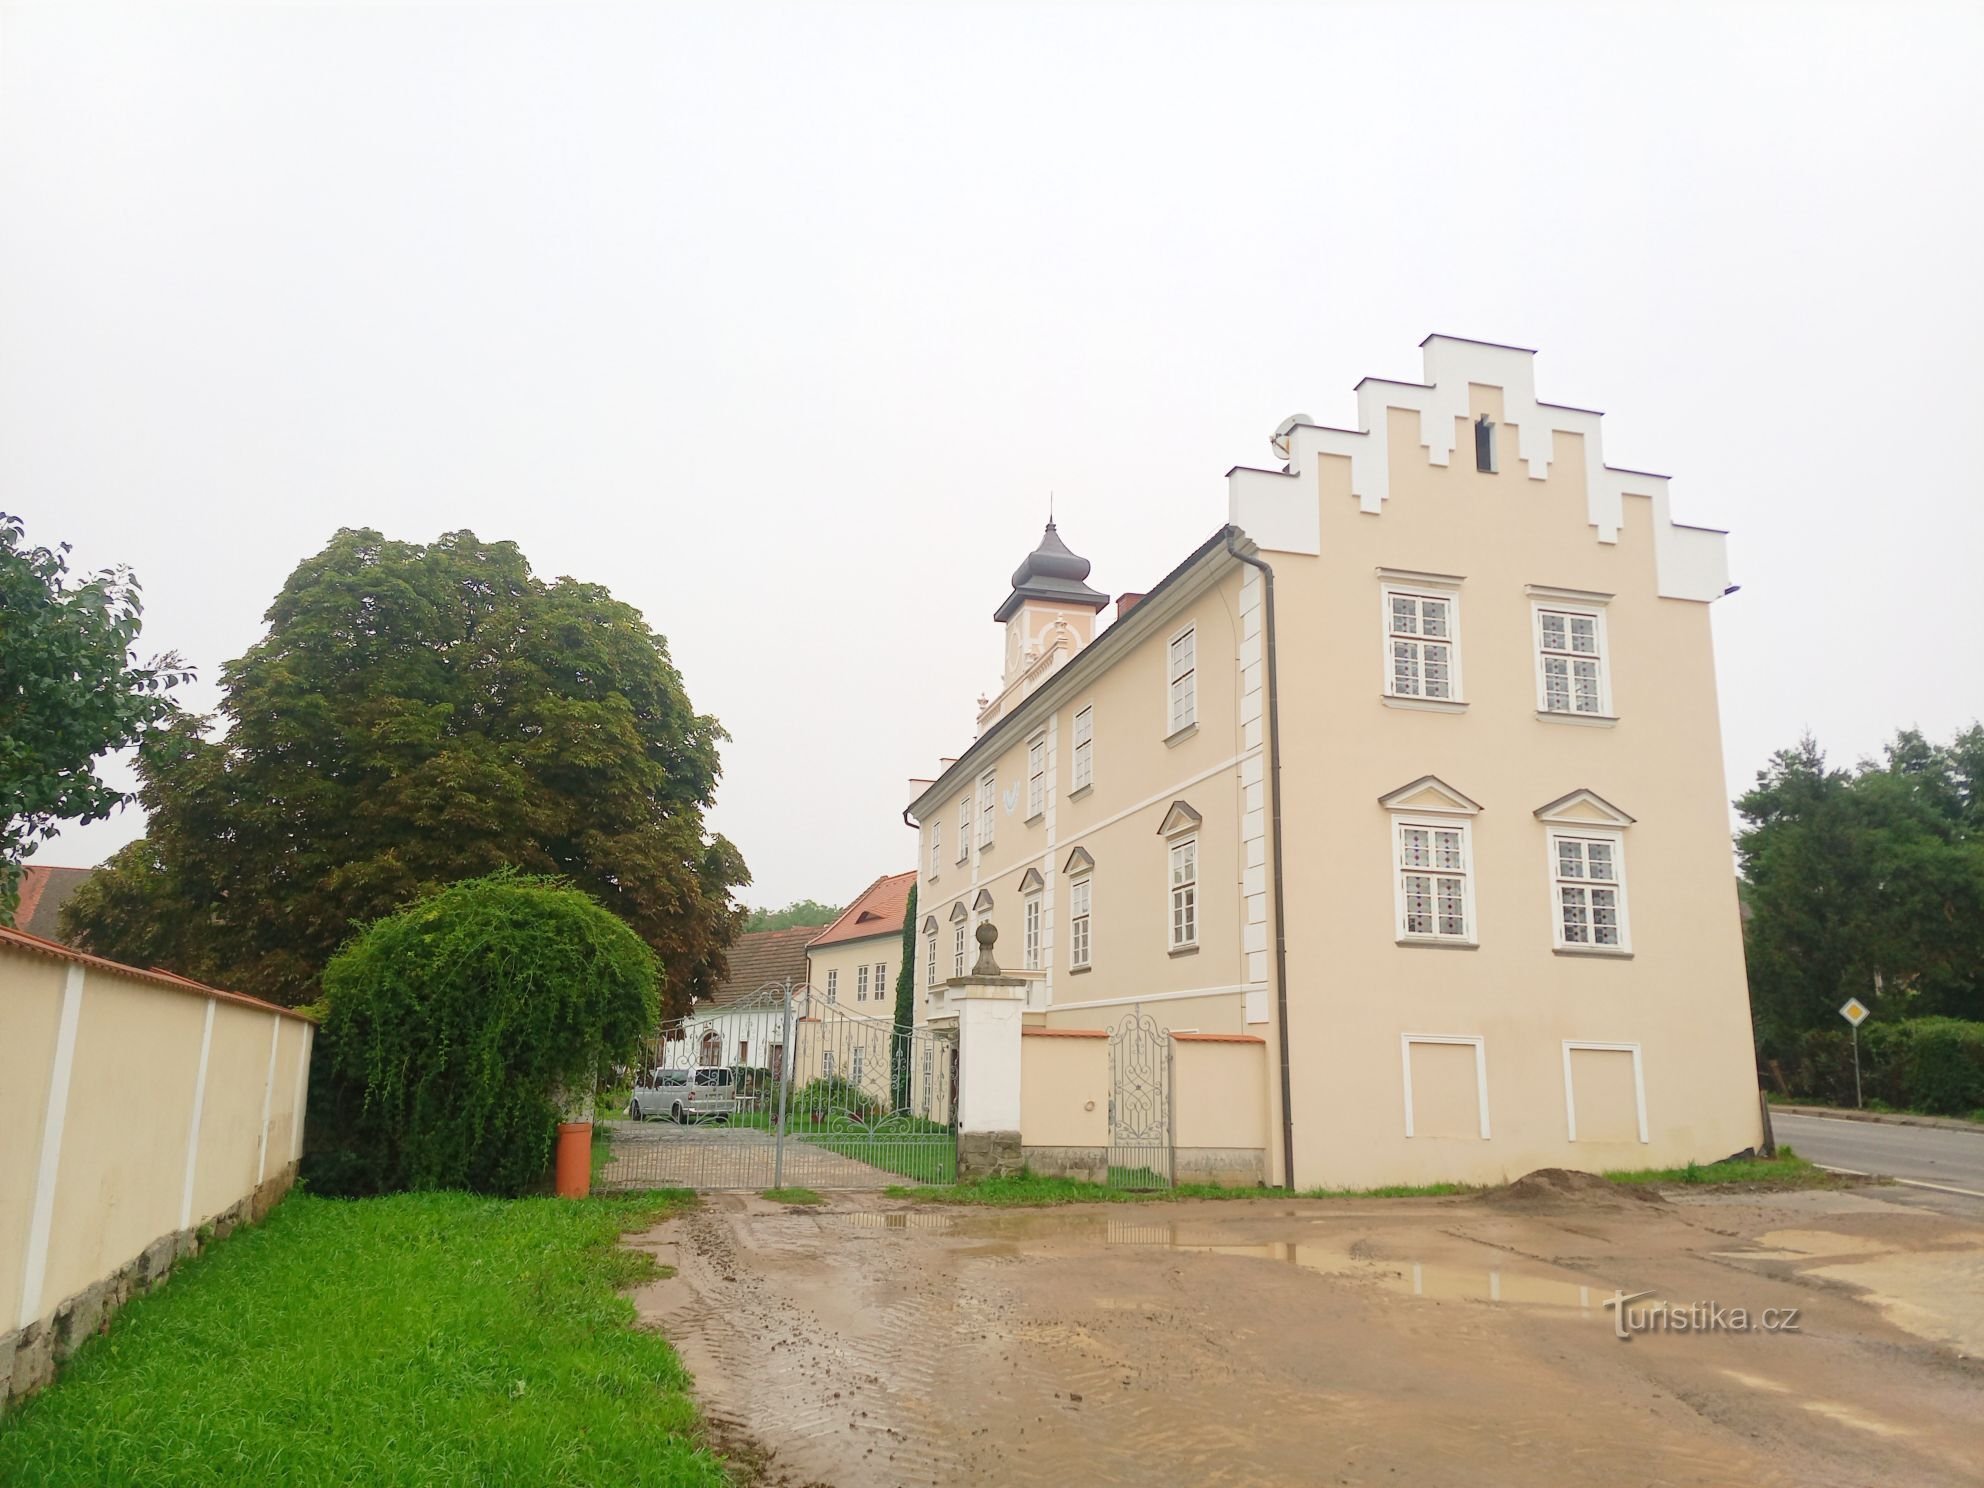 1. Lâu đài thời Phục hưng ở Kňovice từ đầu thế kỷ XVII. Một tòa nhà hai tầng hình chữ nhật với tr